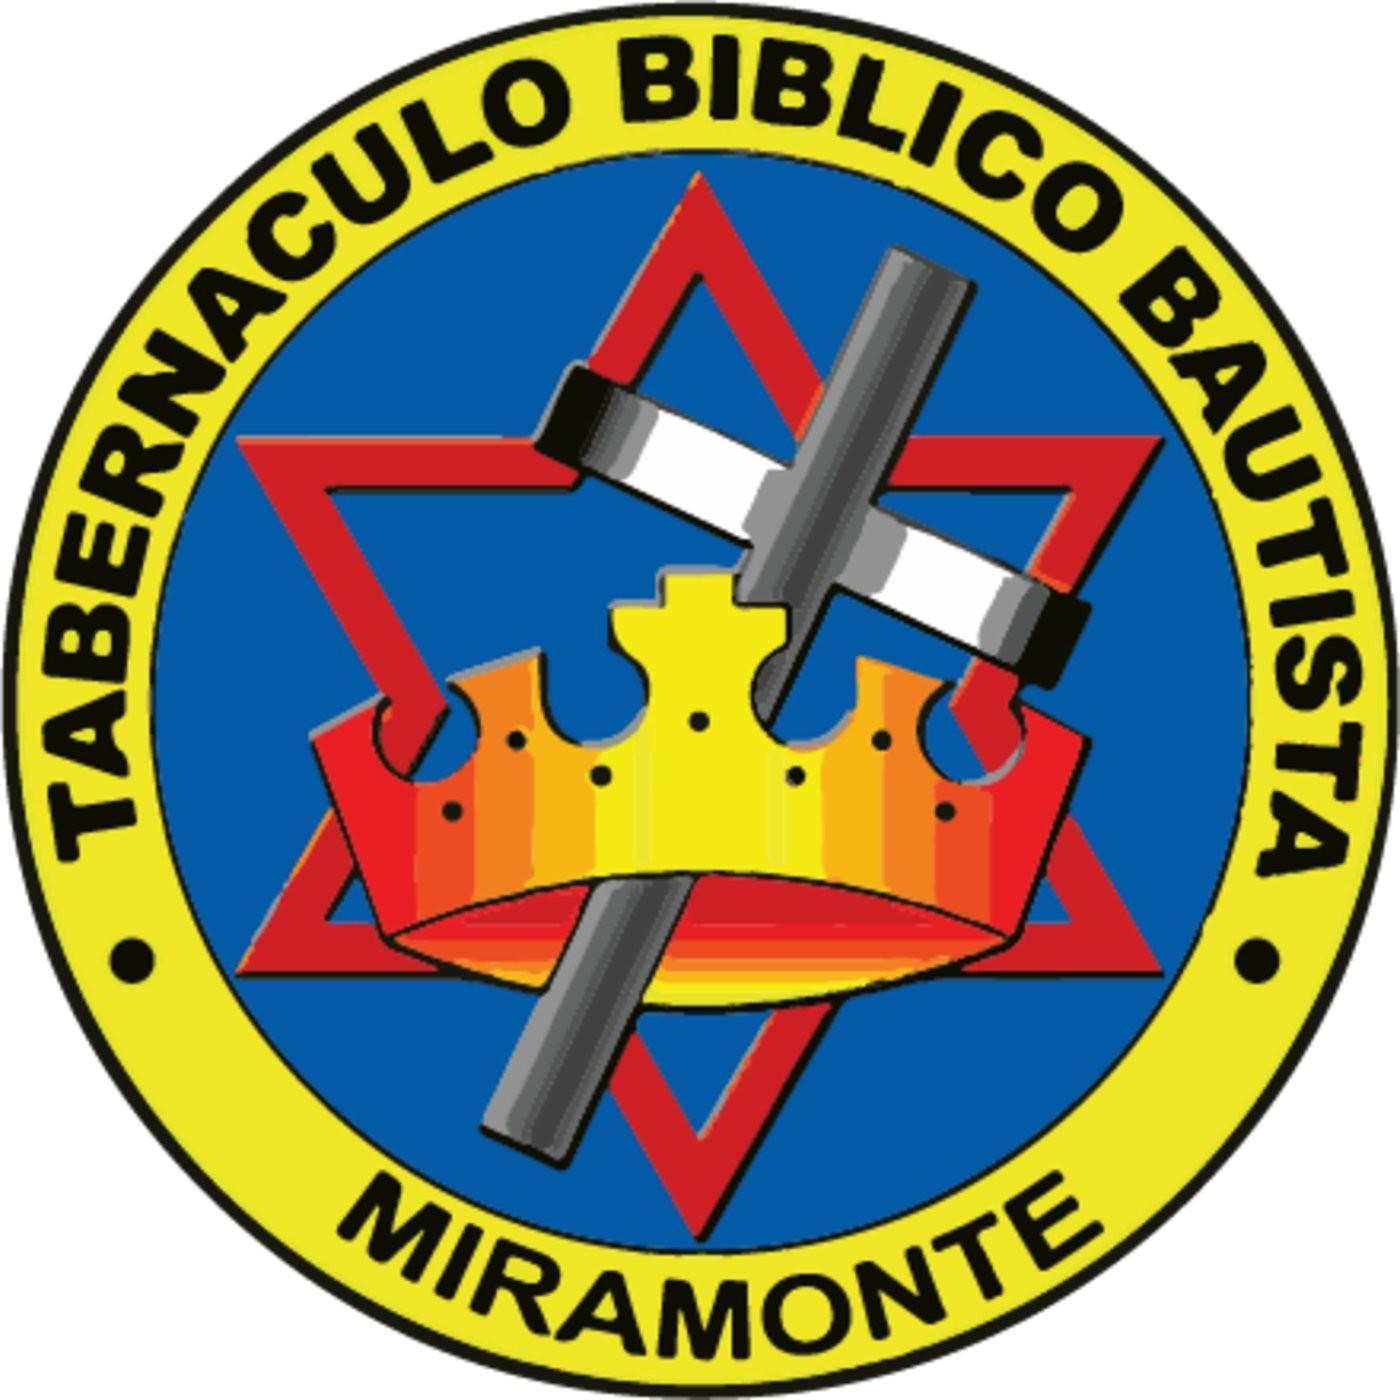 TABE Logo - Listen to the Sermones de Taber Miramonte Episode Mañas